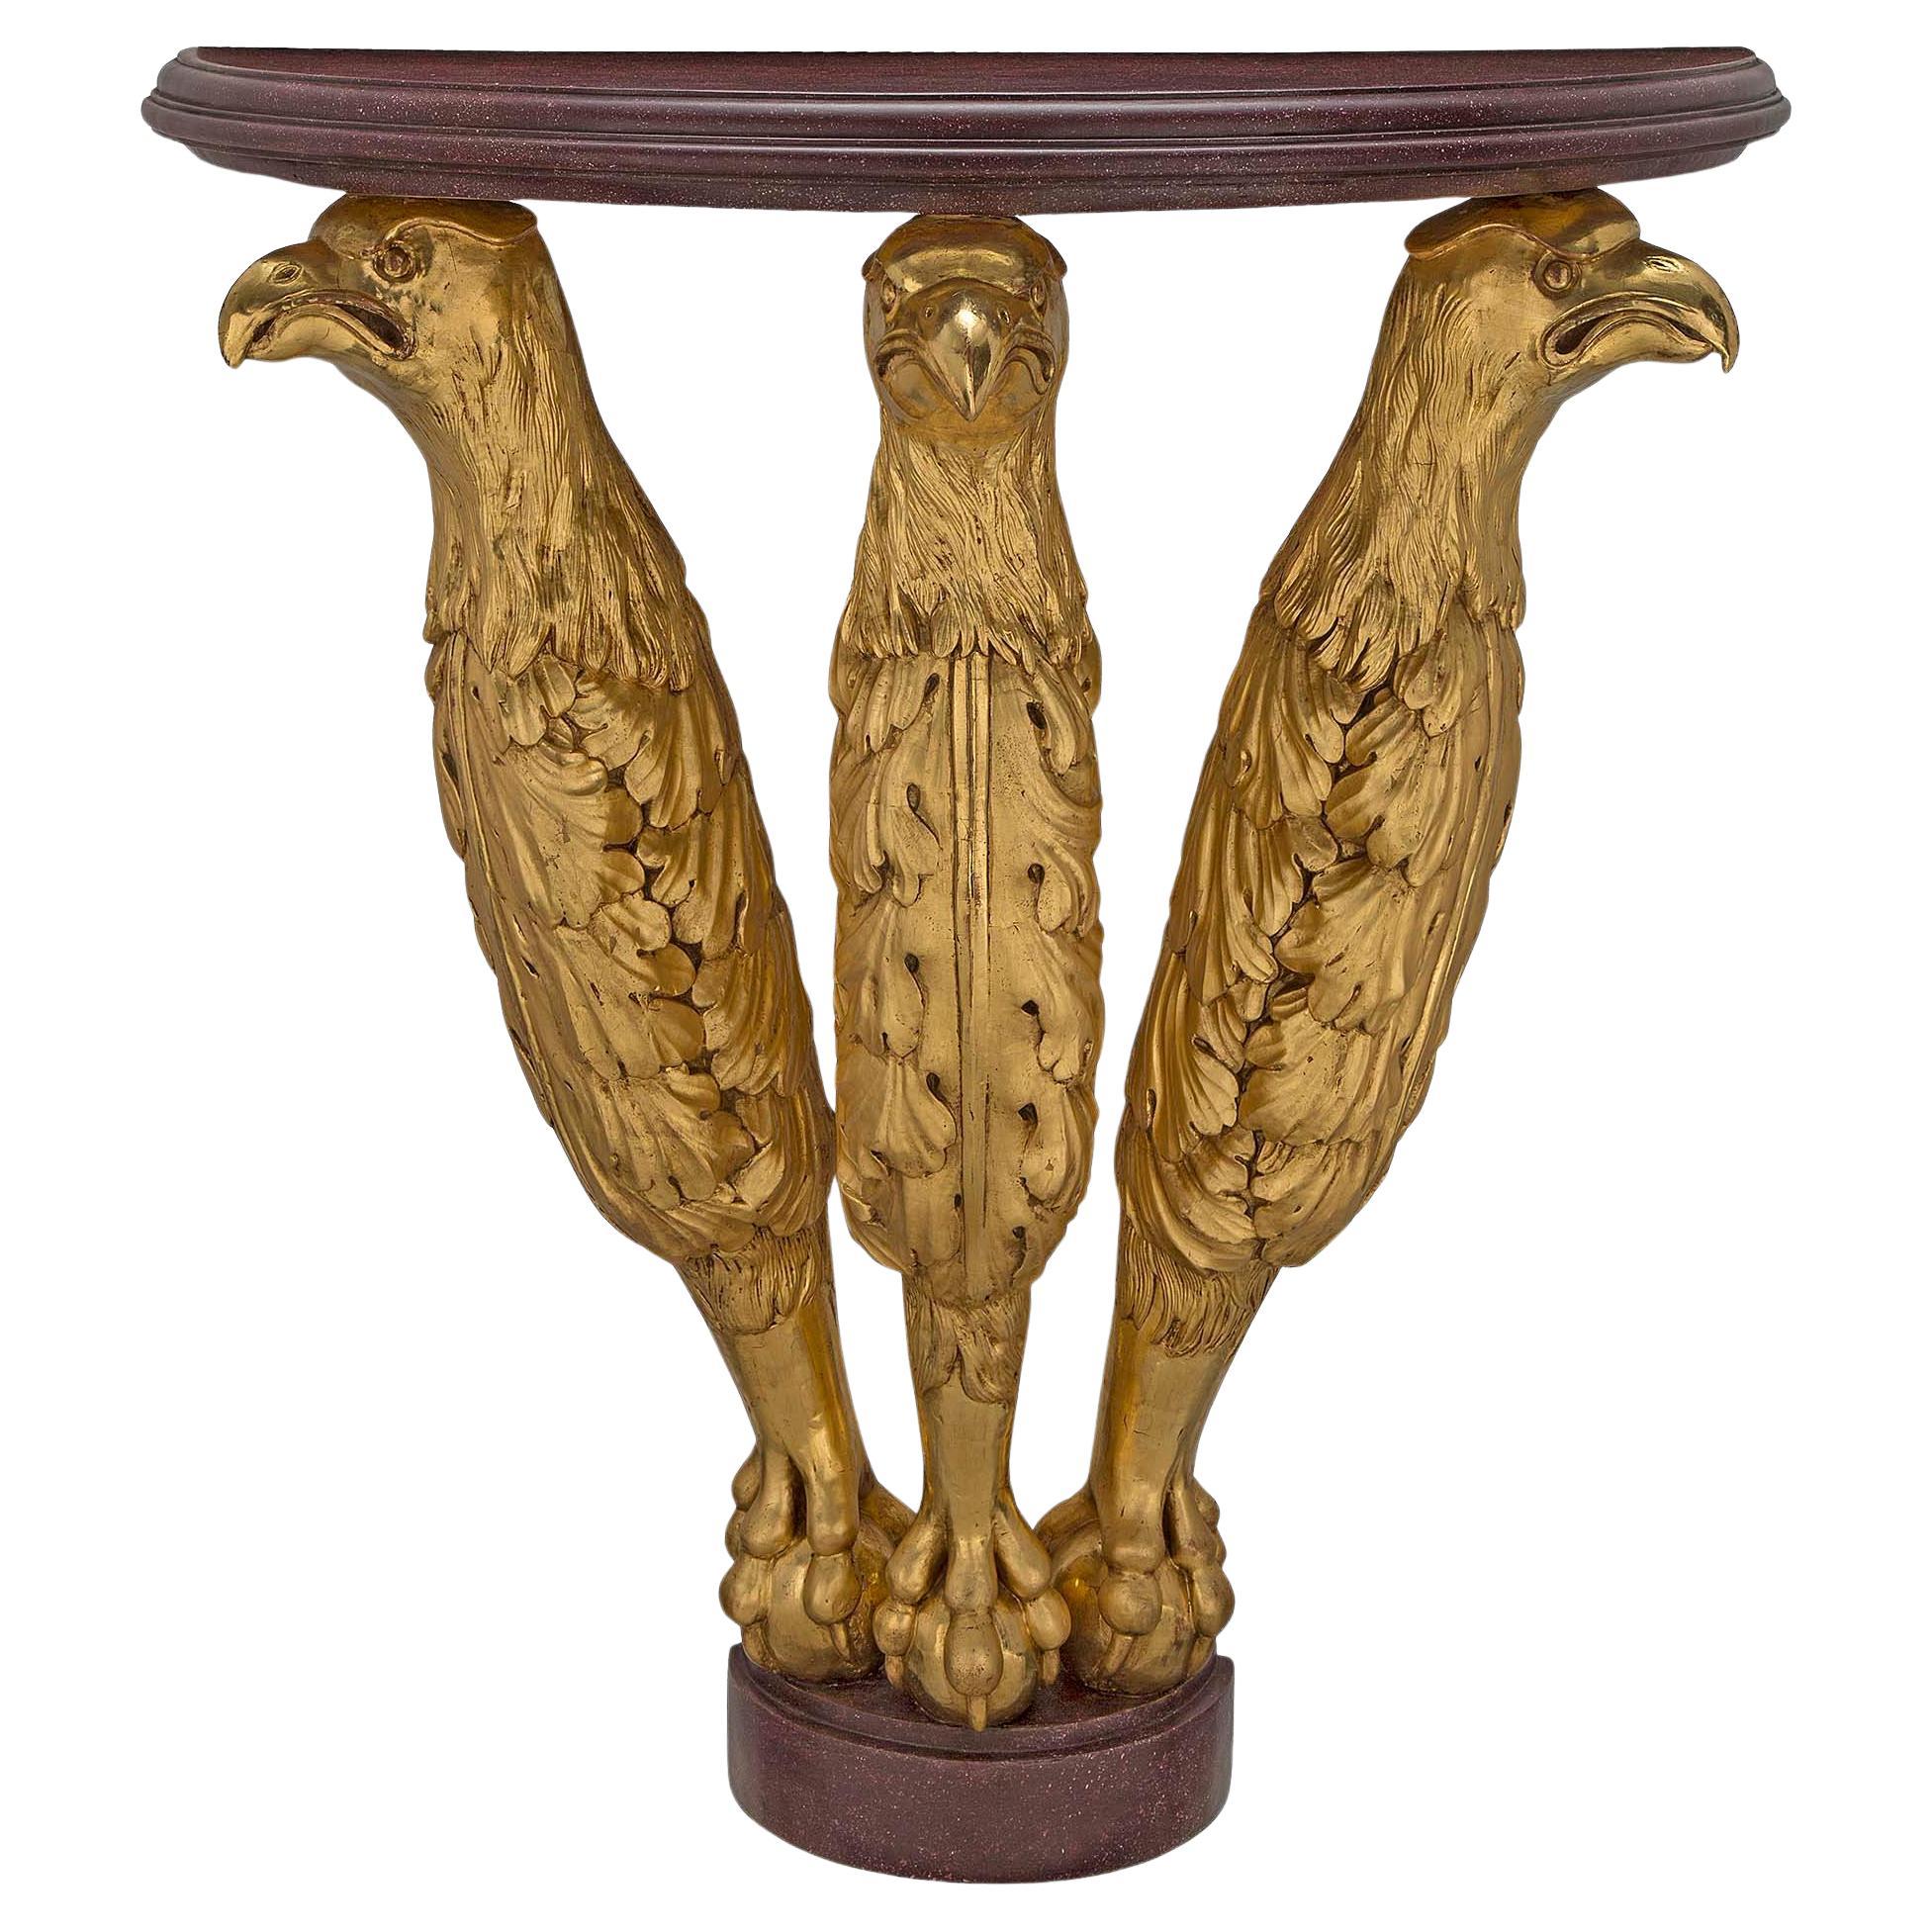 Console demi-lune en bois doré de style néoclassique autrichien du début du XIXe siècle